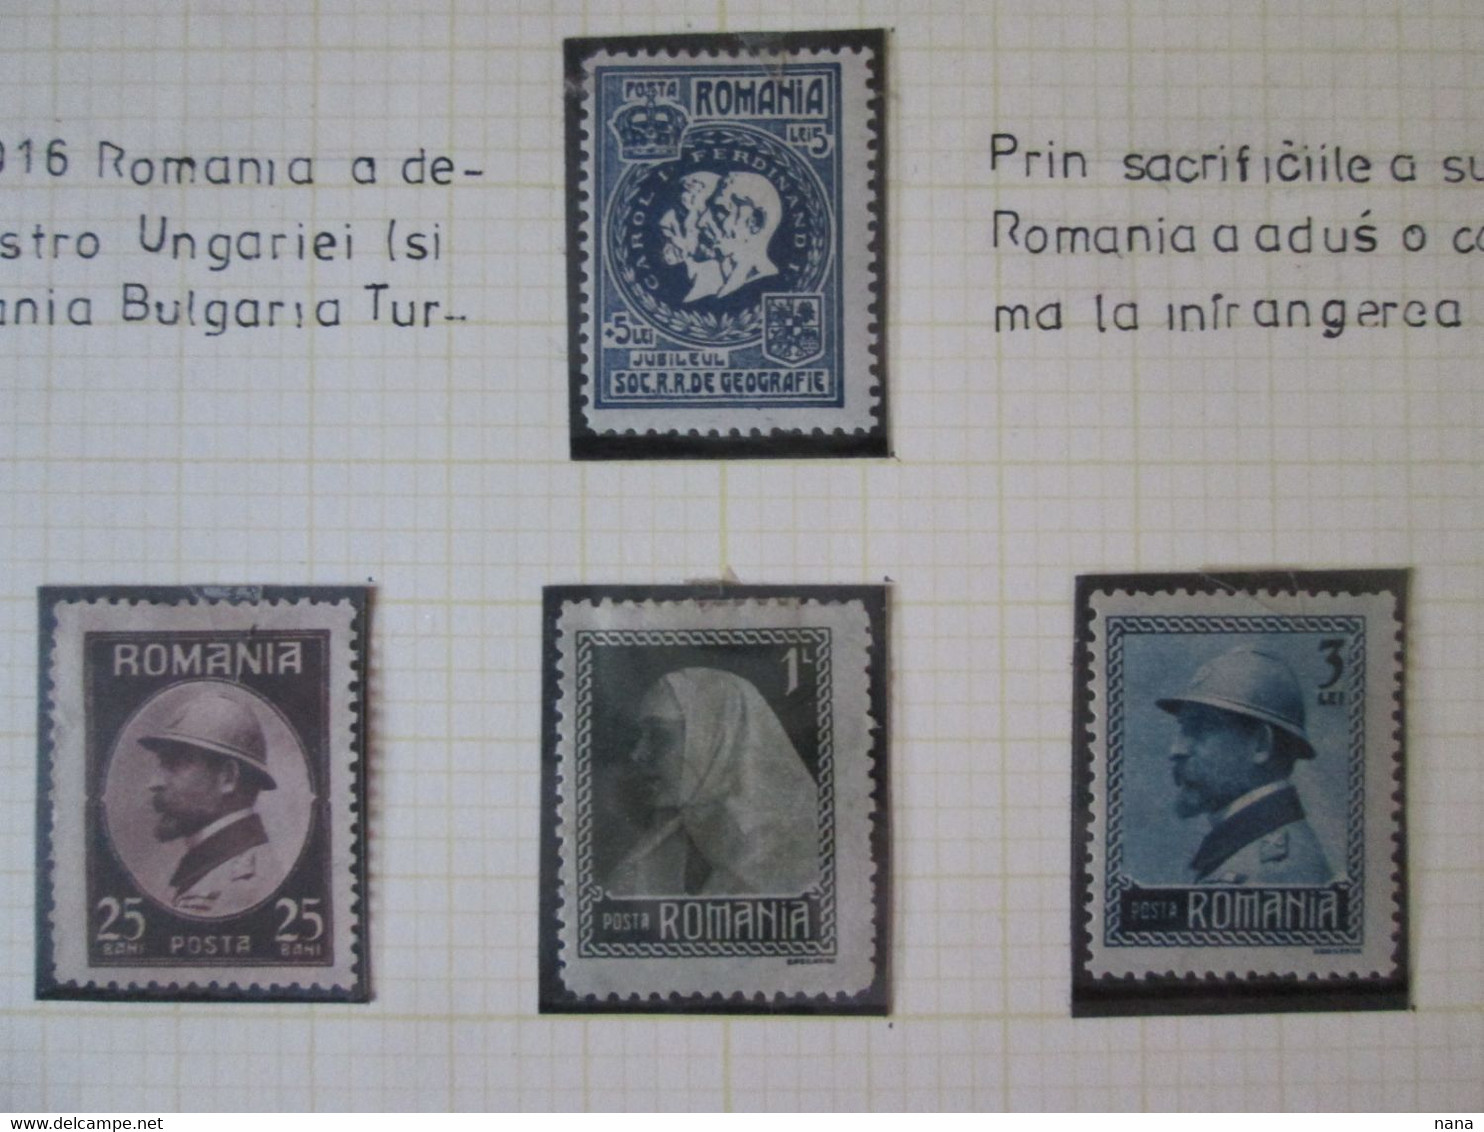 Roumanie Feuille 4 Timbre D'exposition:Participation A La Premiere Guerre/Romania Sheet Of 4 Stamps Participation WWI - Sammlungen